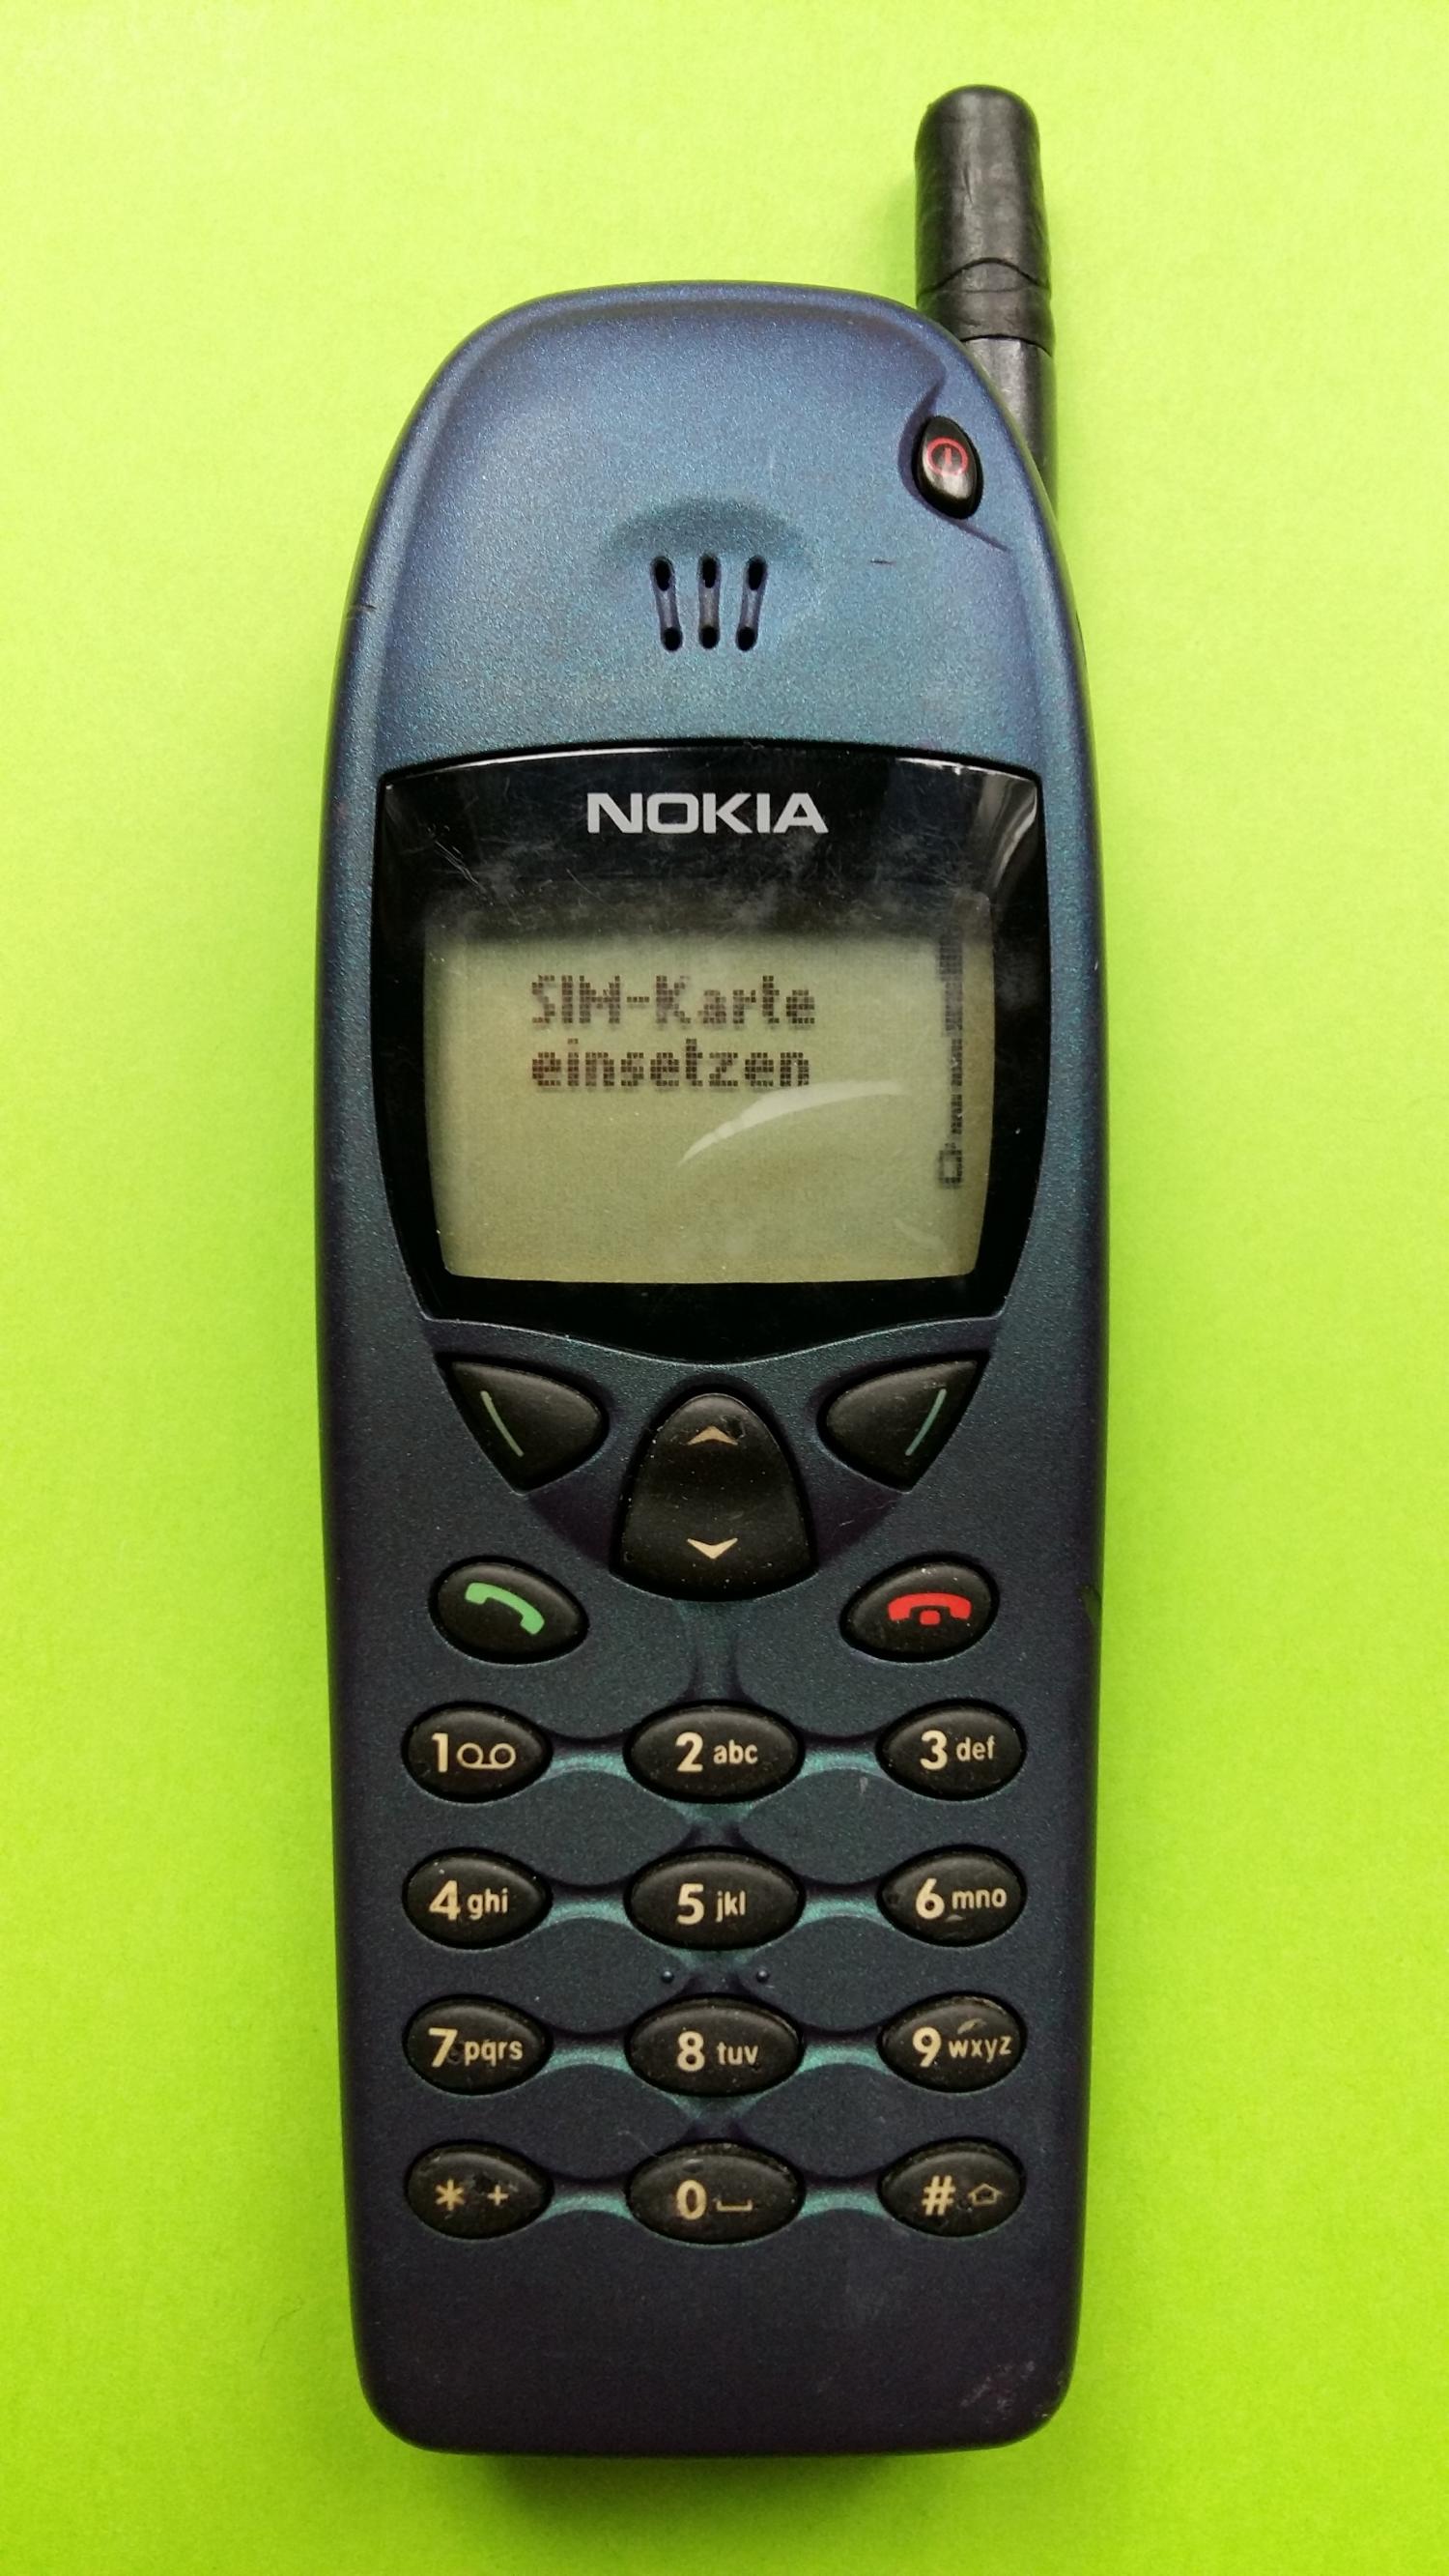 image-7304947-Nokia 6110 (1)1.jpg